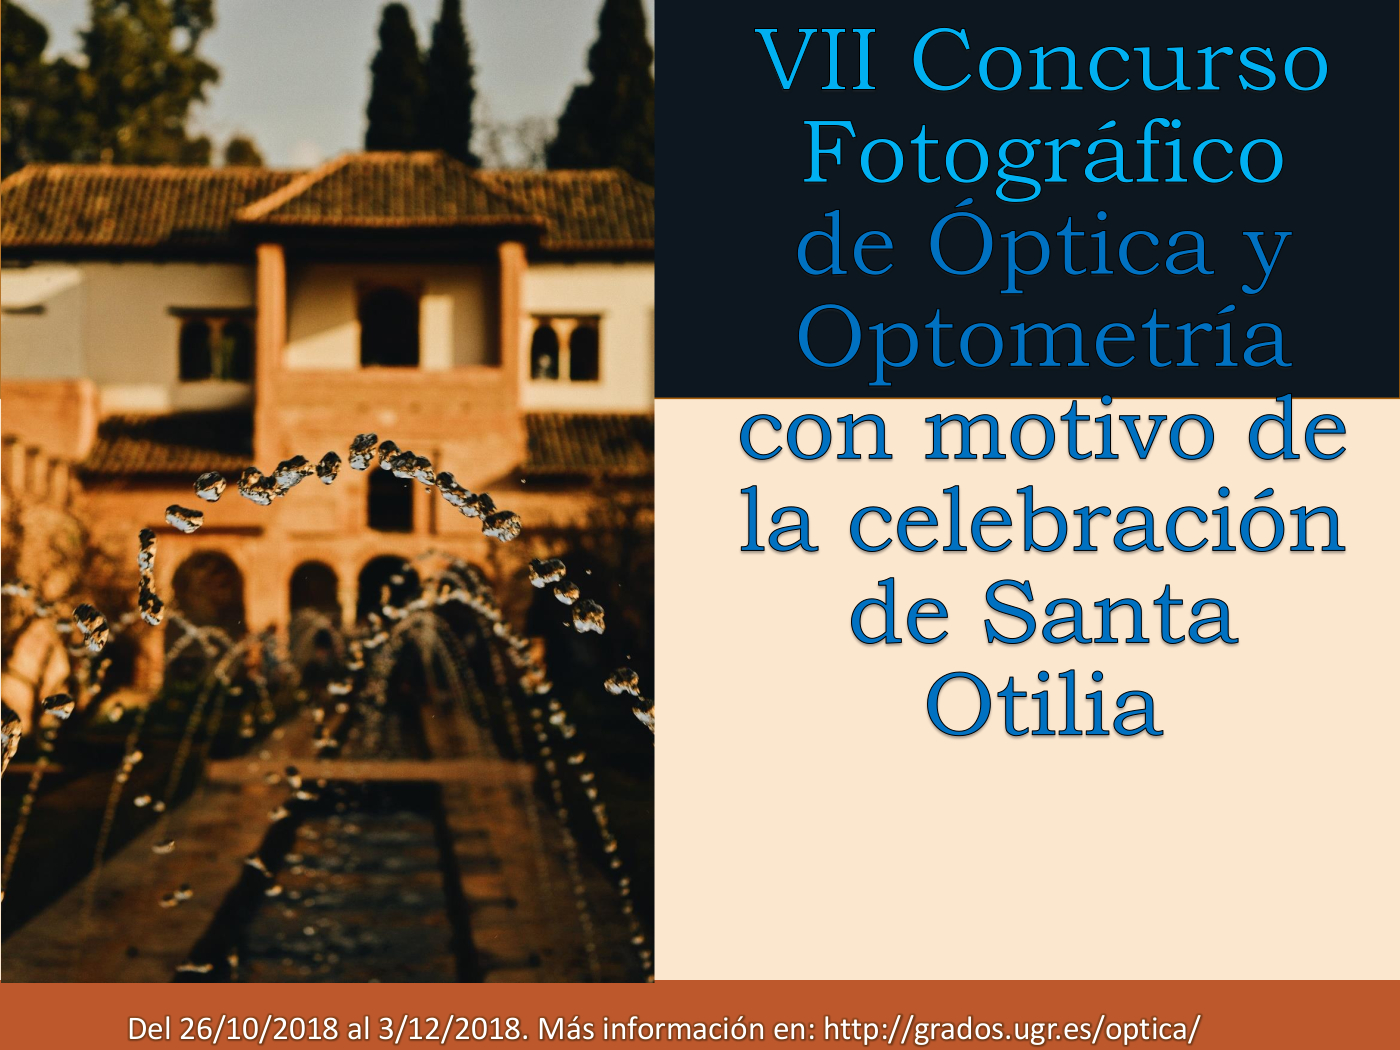 VII Concurso de Fotografía de Óptica y Optometría con motivo de la celebración de Santa Otilia